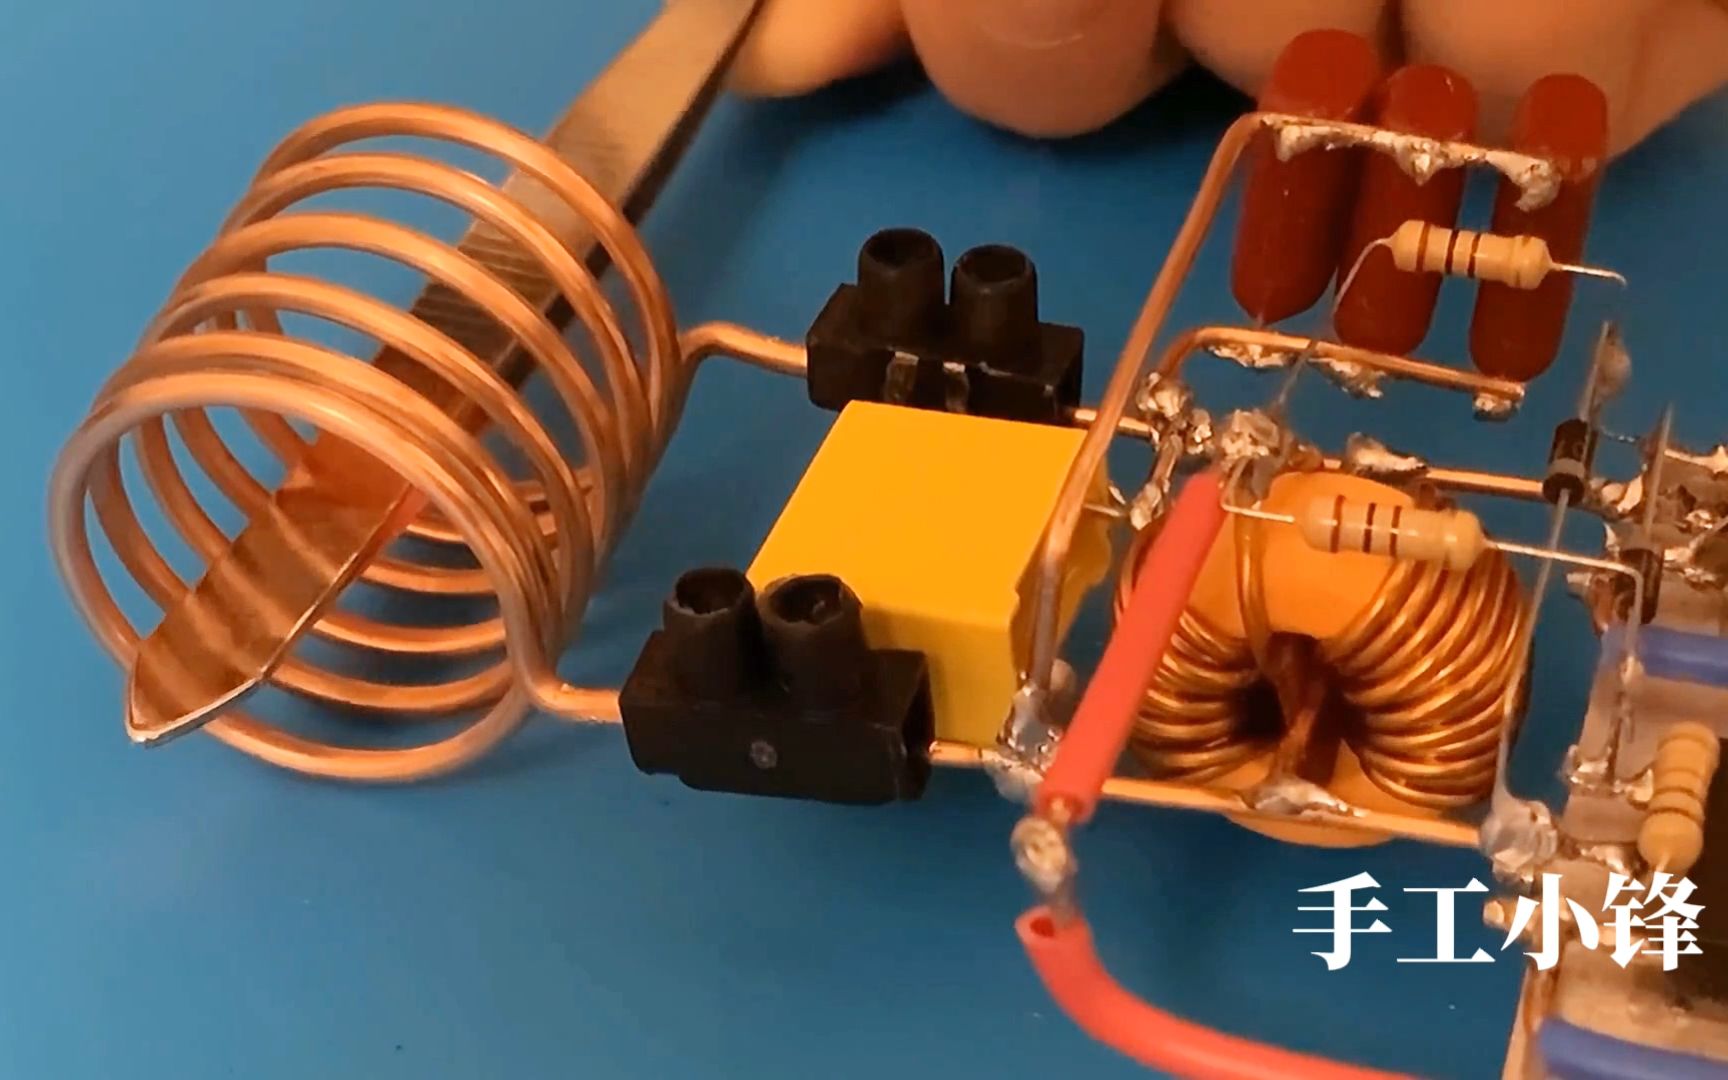 教你DIY一个ZVS电磁加热器，加热金属几秒就能烧红